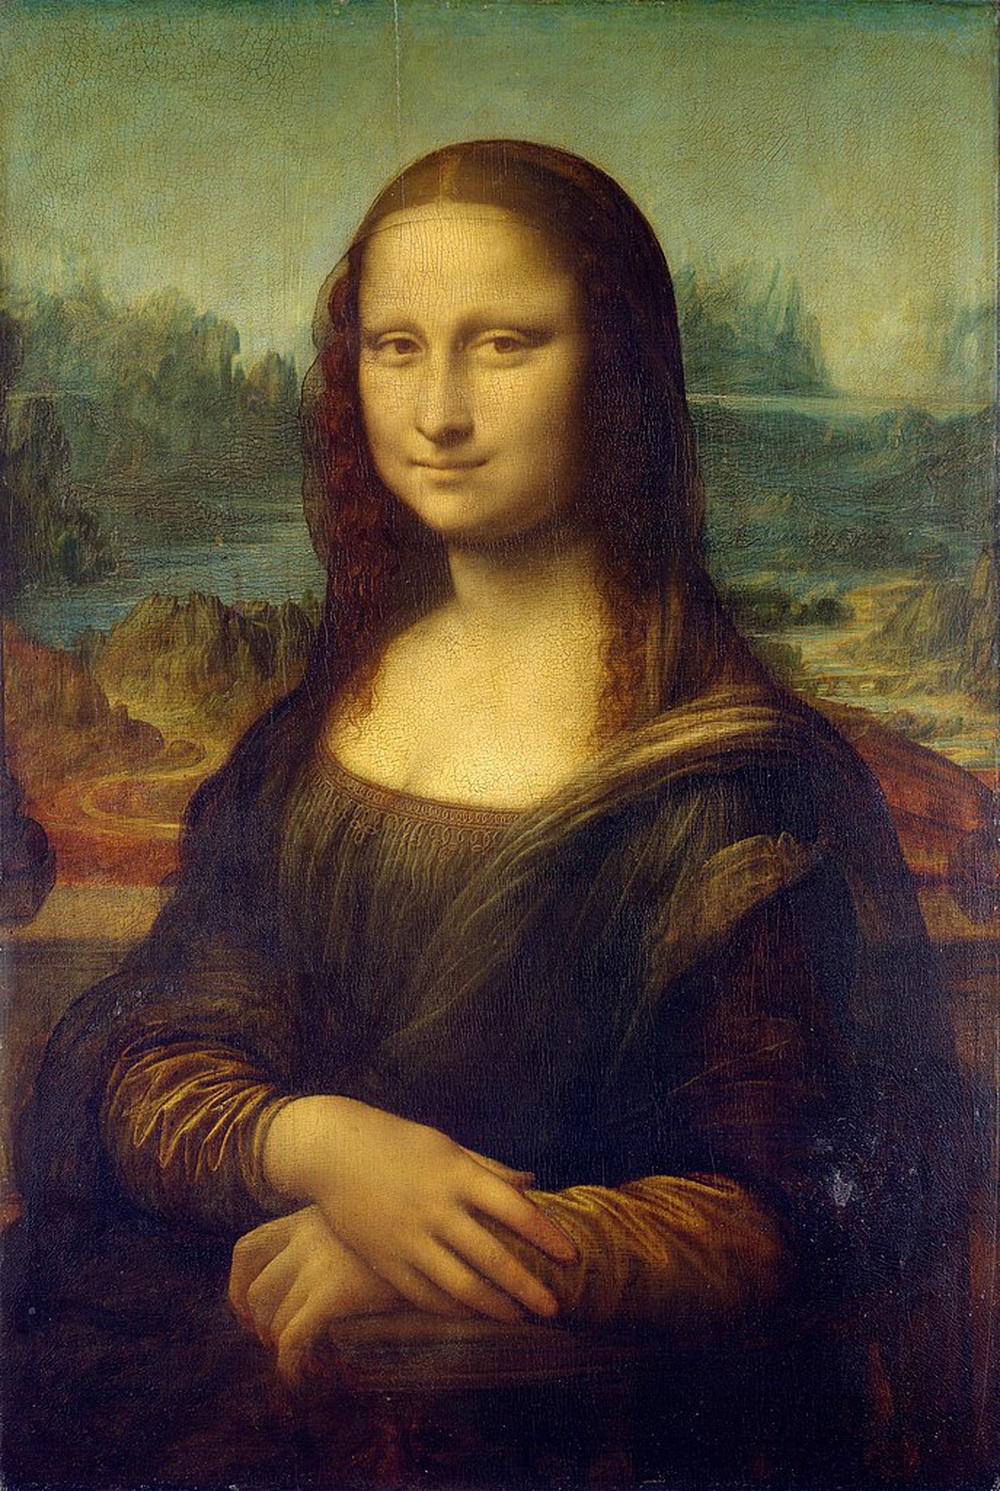 Vụ bắt giữ danh họa Picasso vì nghi vấn đánh cắp tranh Mona Lisa - Kỳ 1 - Ảnh 1.